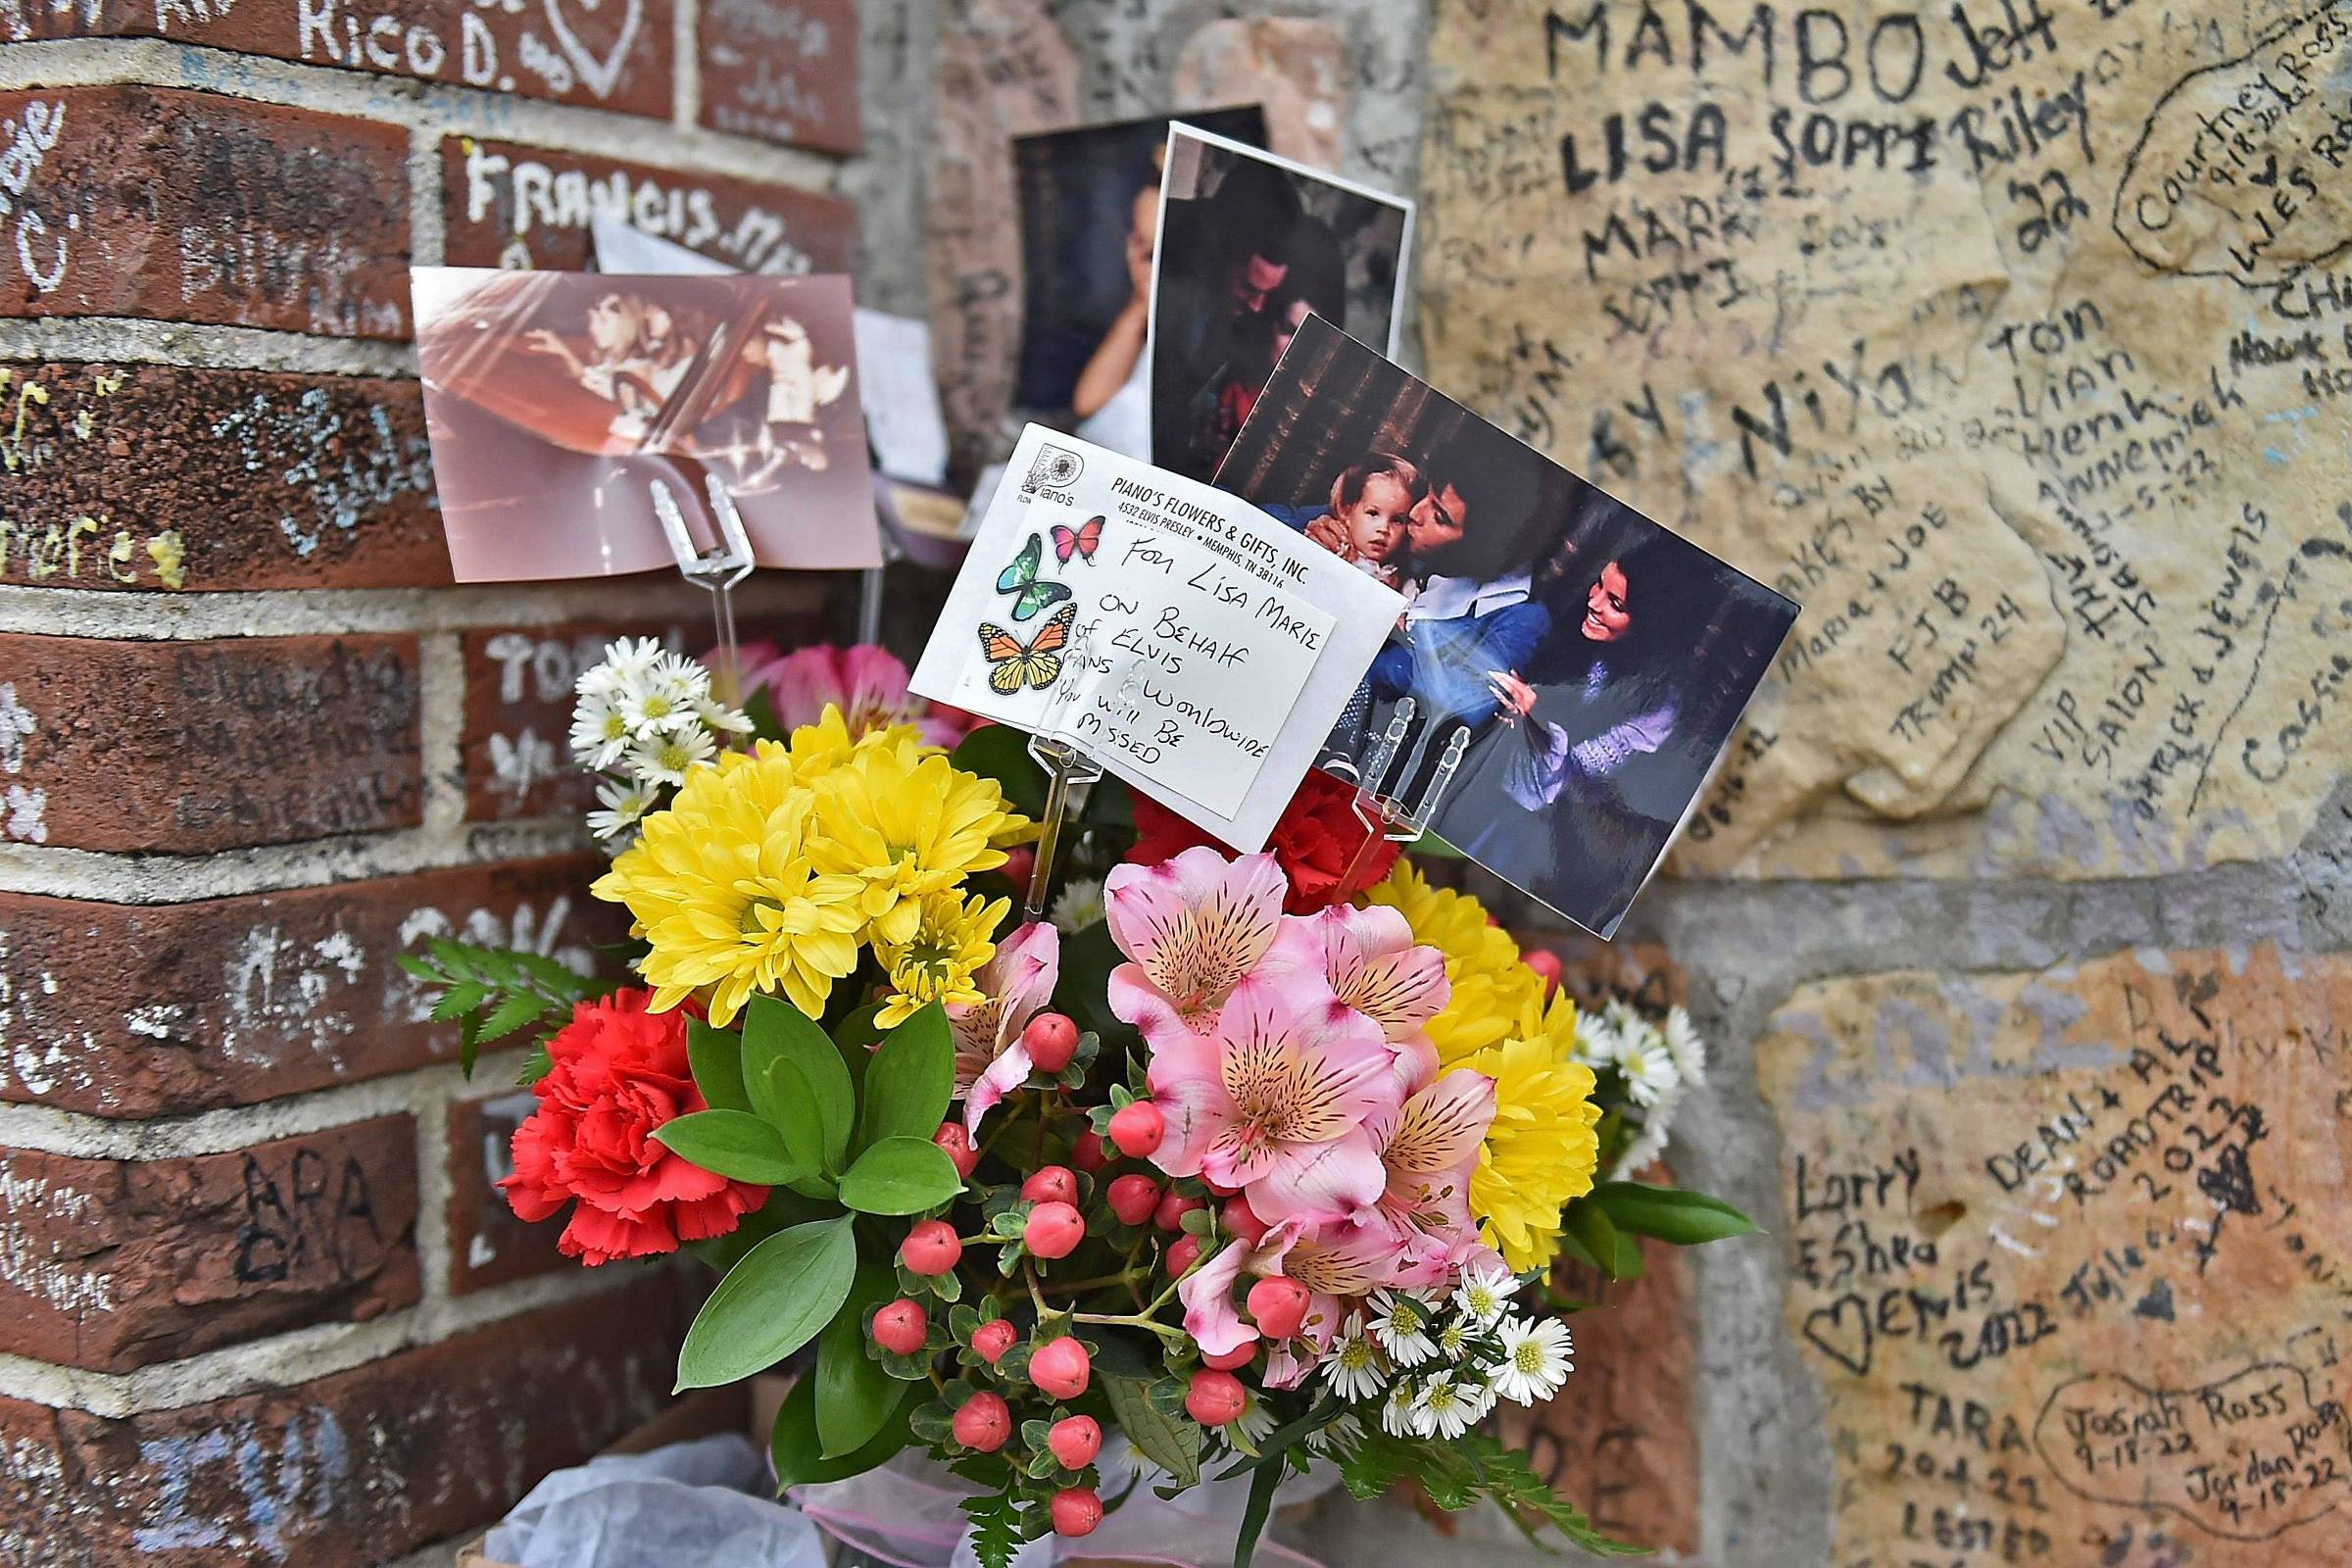 Filha de Lisa Marie Presley cortou relações com avó por convite a  ex-padrasto desafeto para enterro da mãe, Celebridades